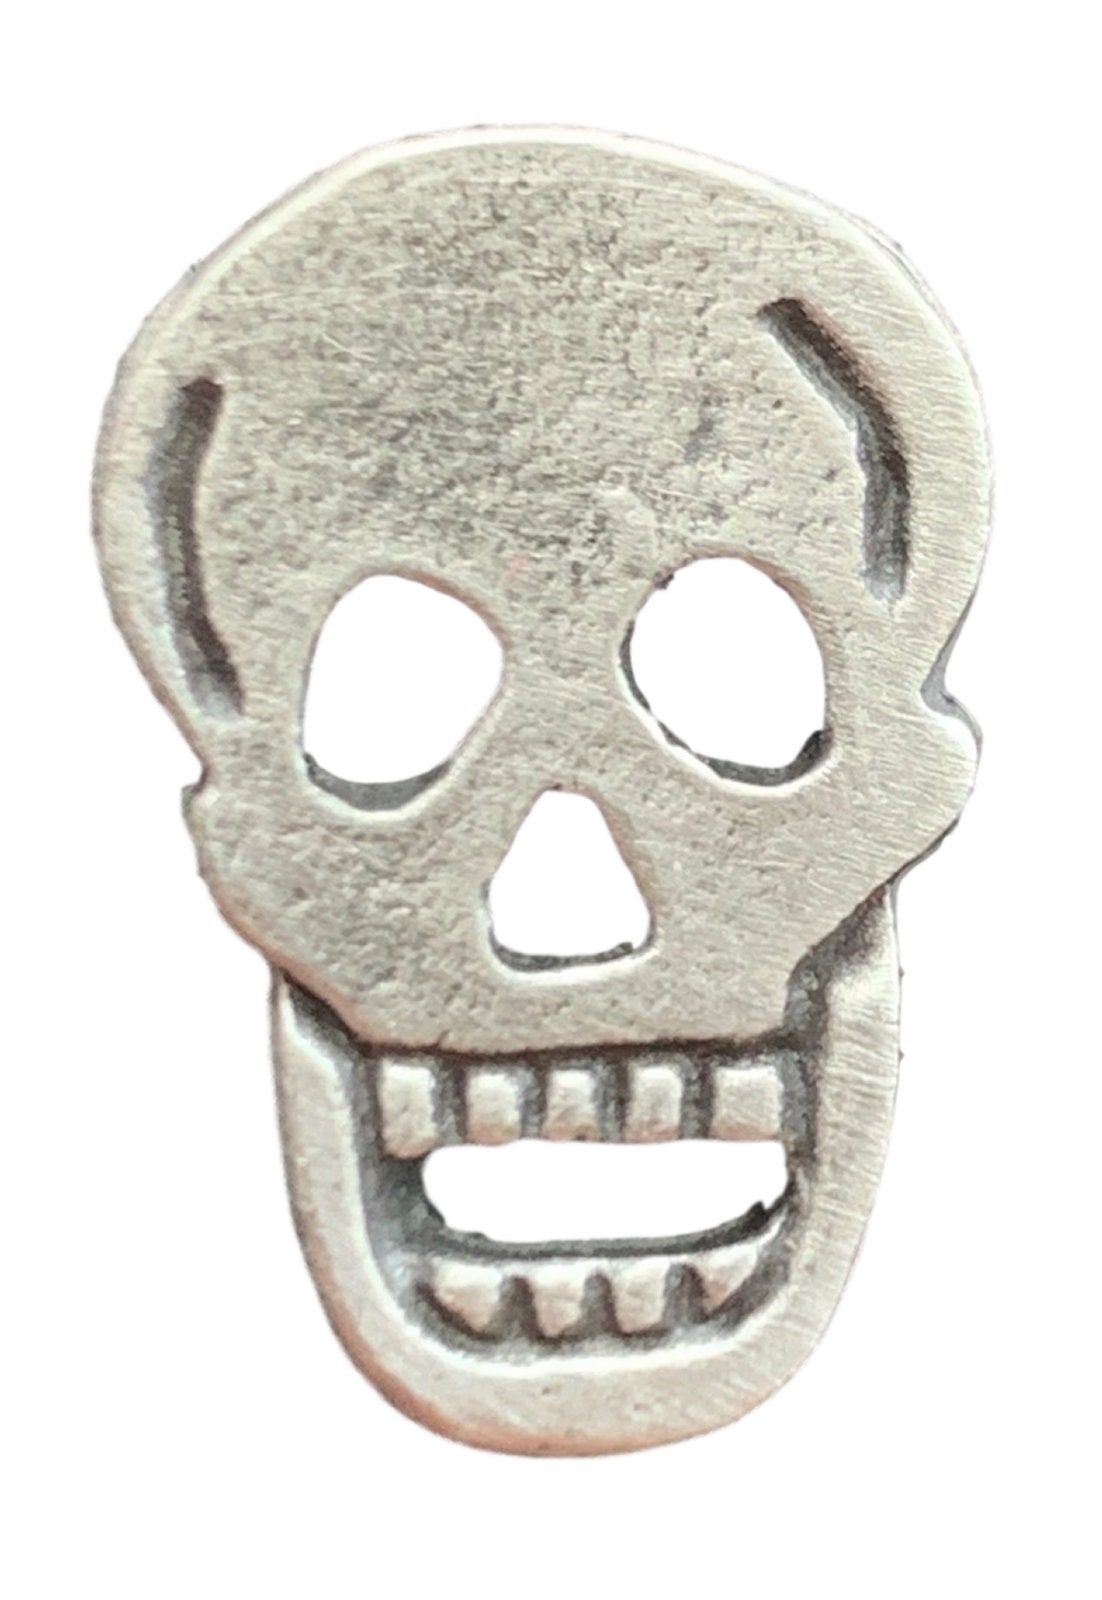 Skull Design English Pewter Lapel Pin Badge XDHLP1433 